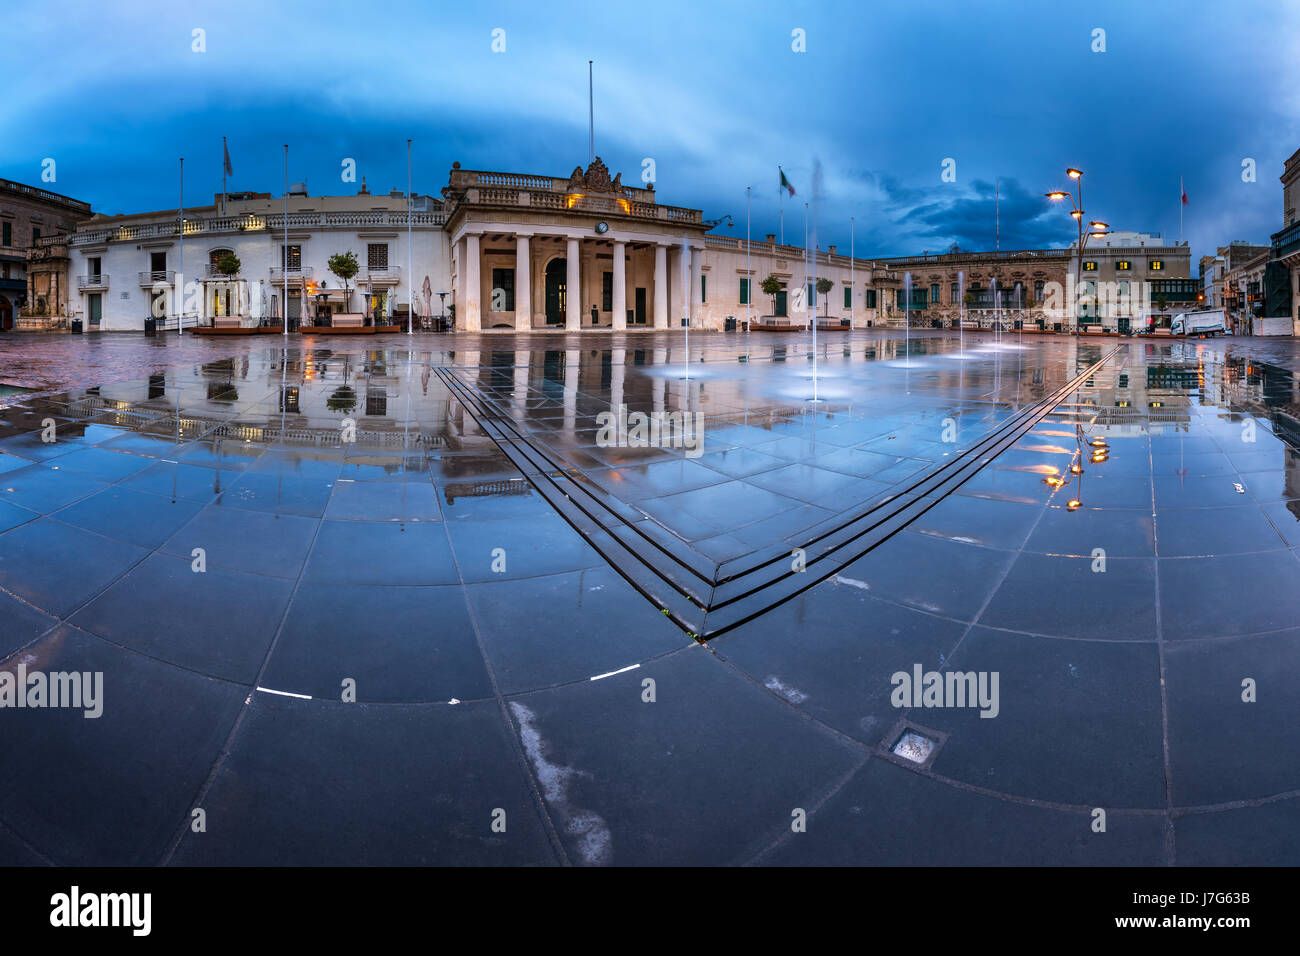 Fontaine et Saint George Square sur la matinée pluvieuse, La Valette, Malte Banque D'Images